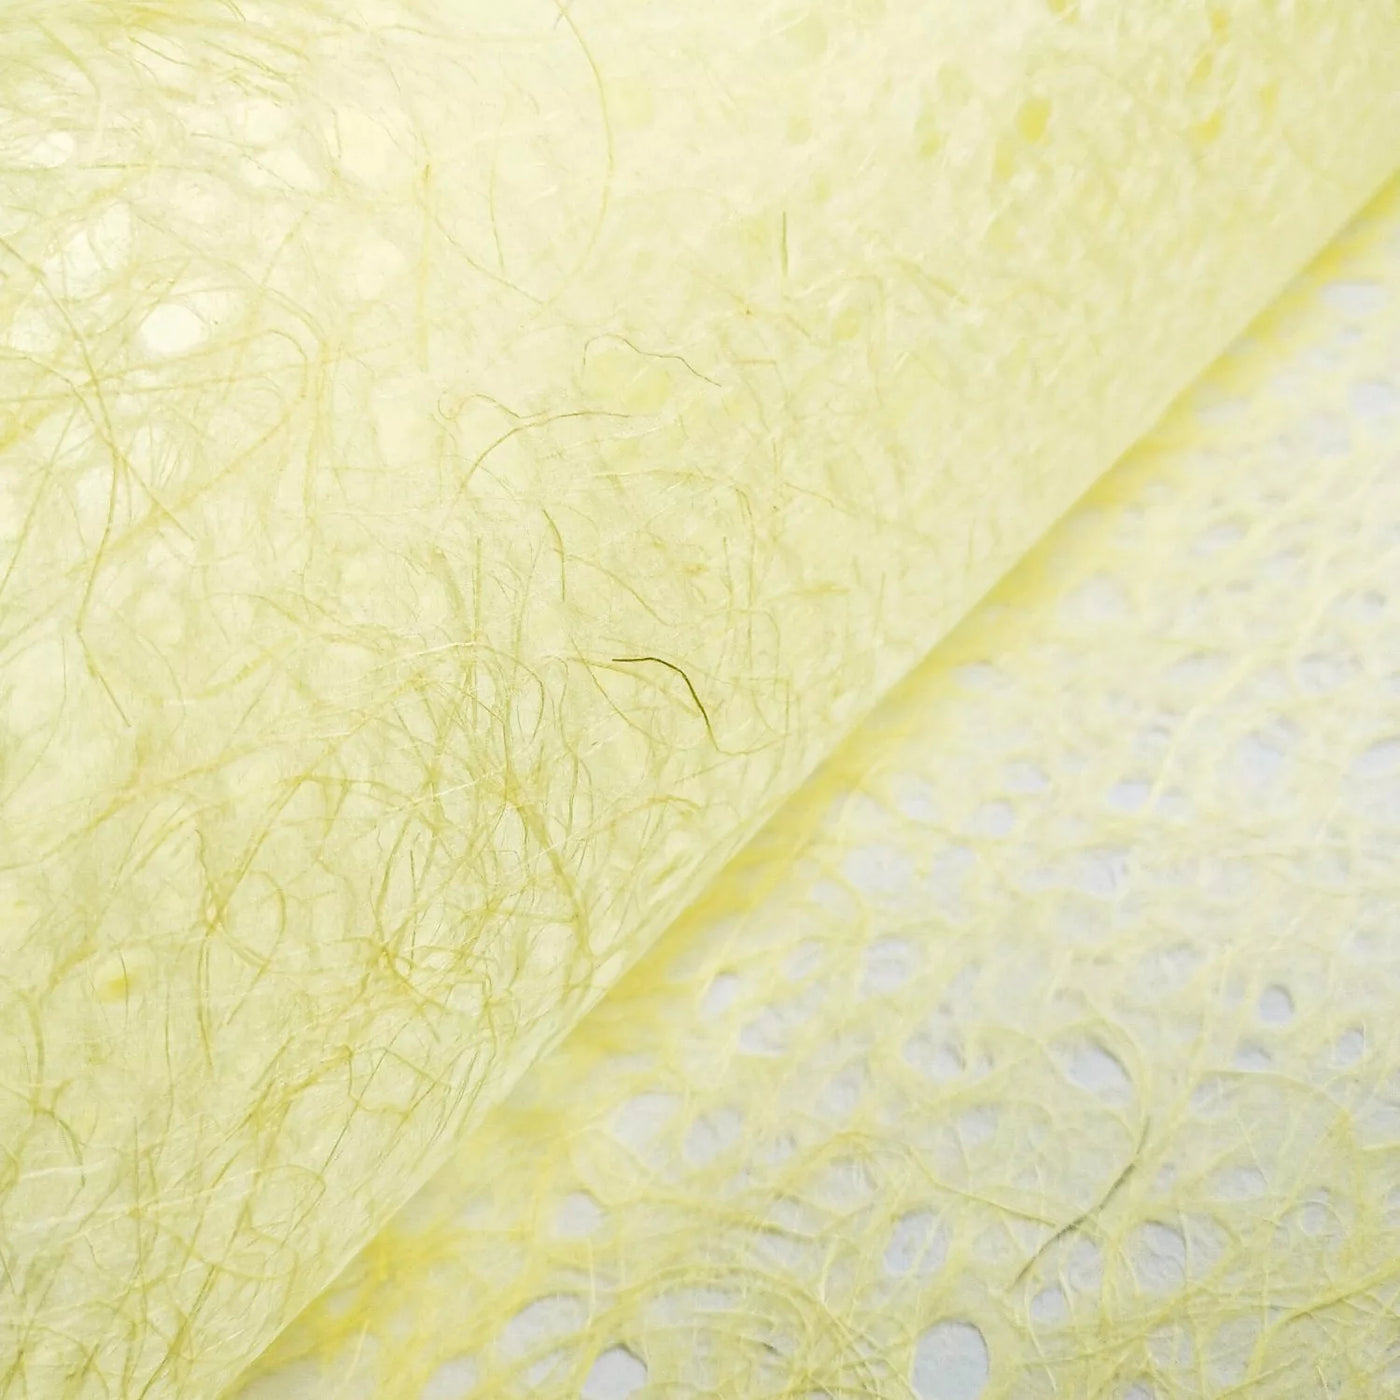 Asarakusui Lace Paper (Yellow)